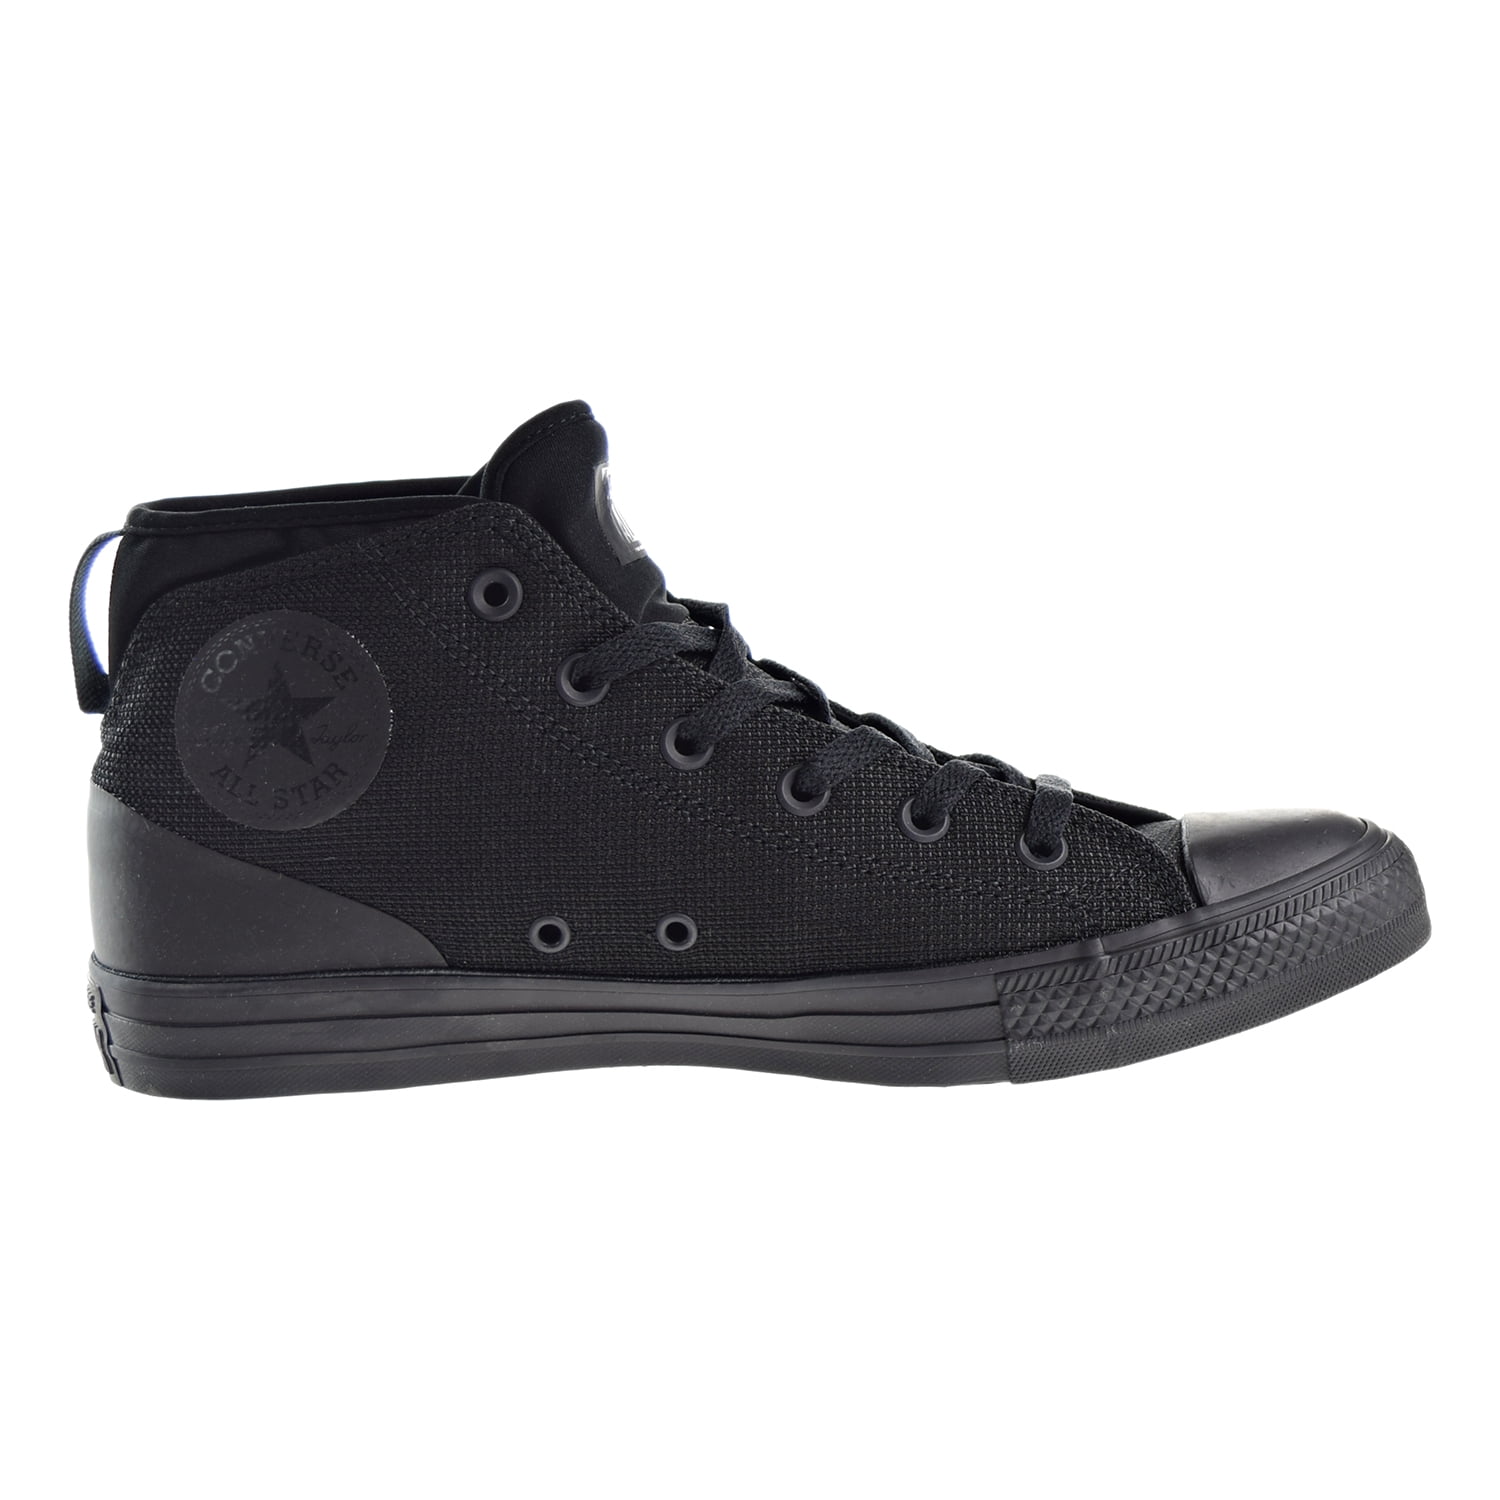 Converse Chuck Taylor All-Star Syde Street Mid Men's Shoe 155489c (11.5 D(M) US) - Walmart.com